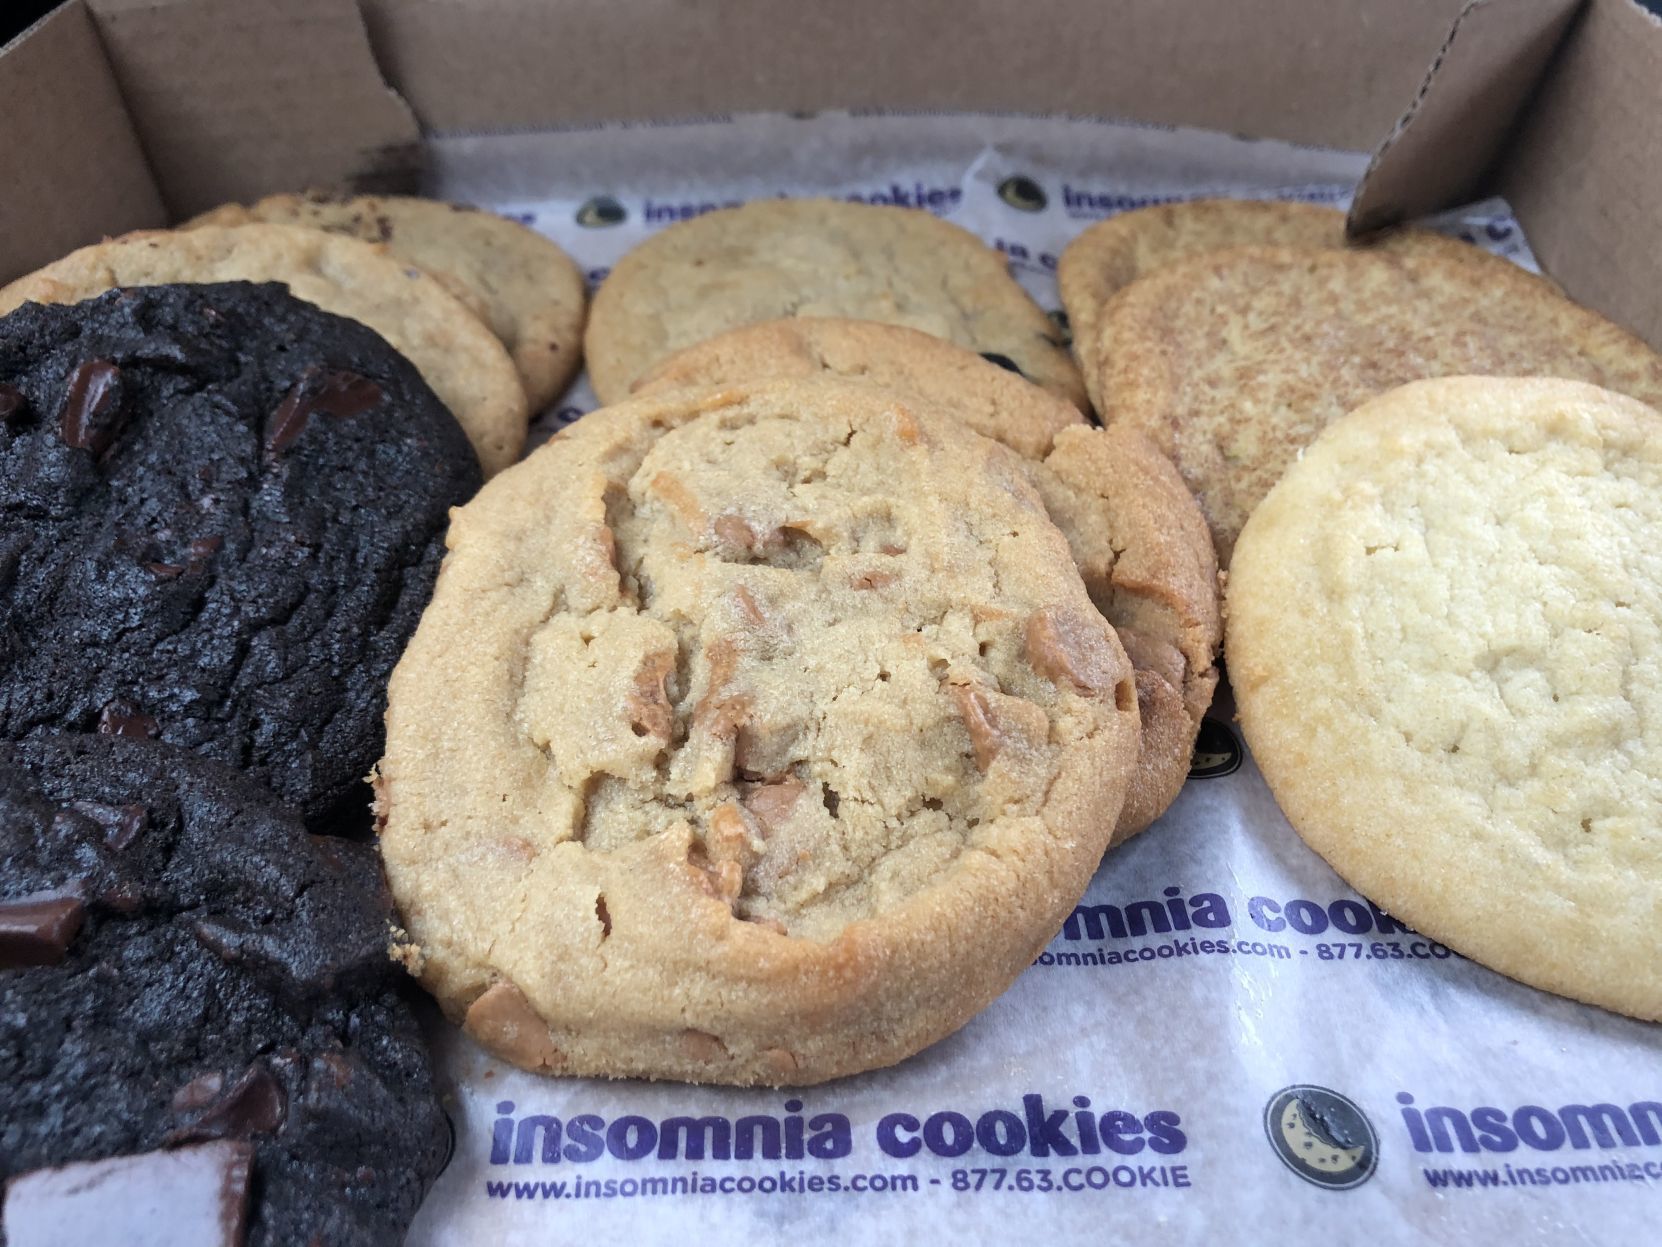 ordering insomnia cookies